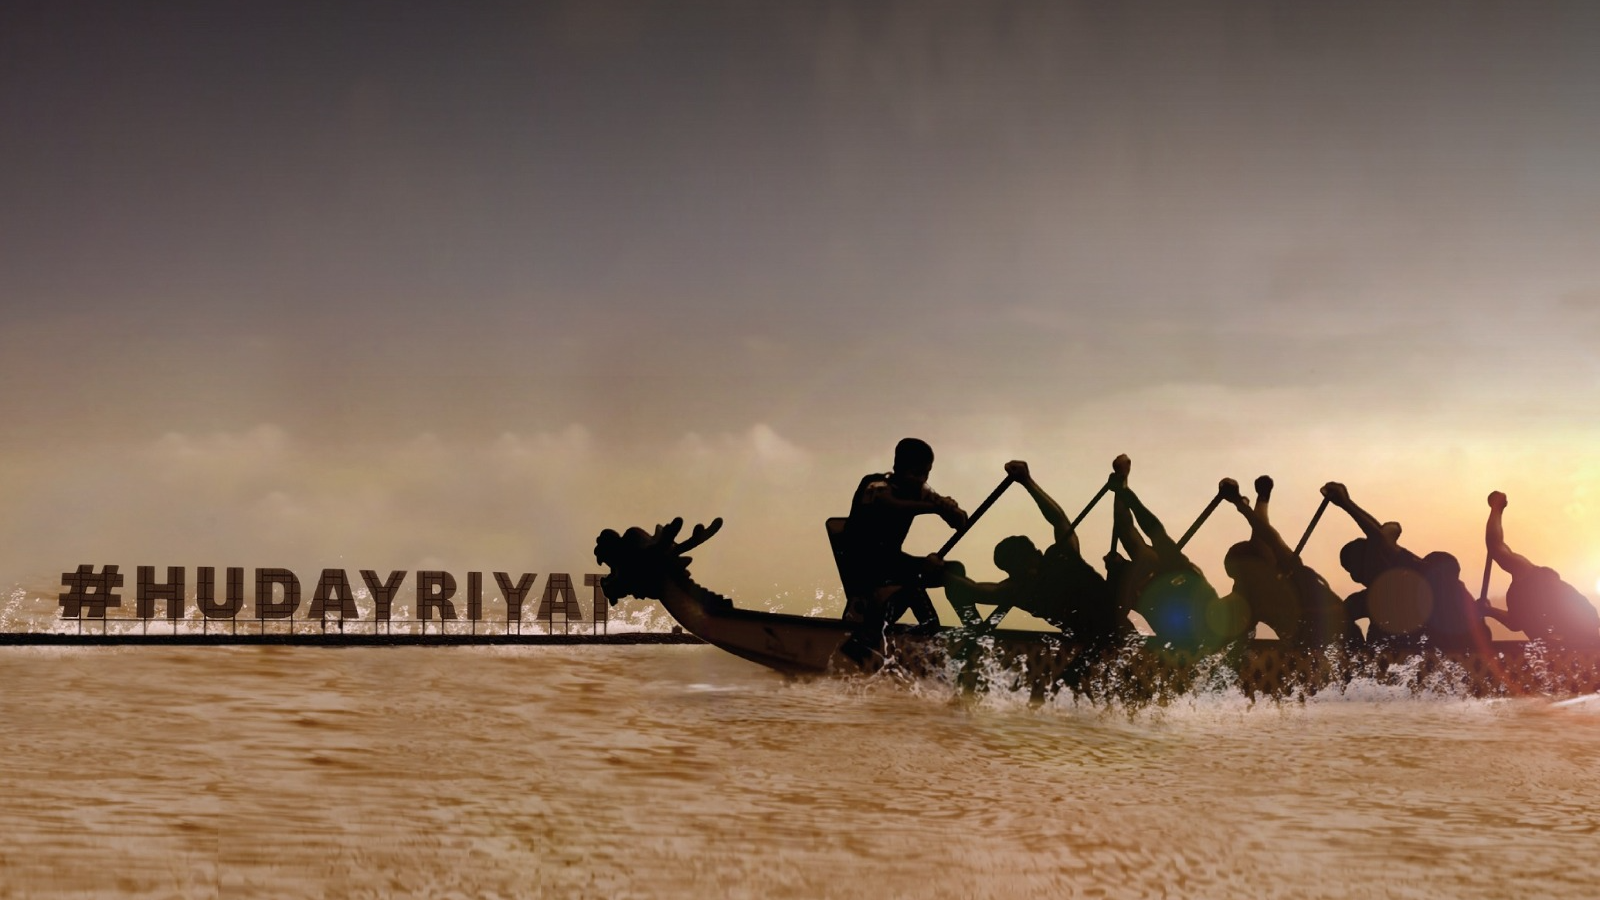 https://adgully.me/post/3638/dragon-boat-race-series-makes-its-debut-at-hudayriyat-island